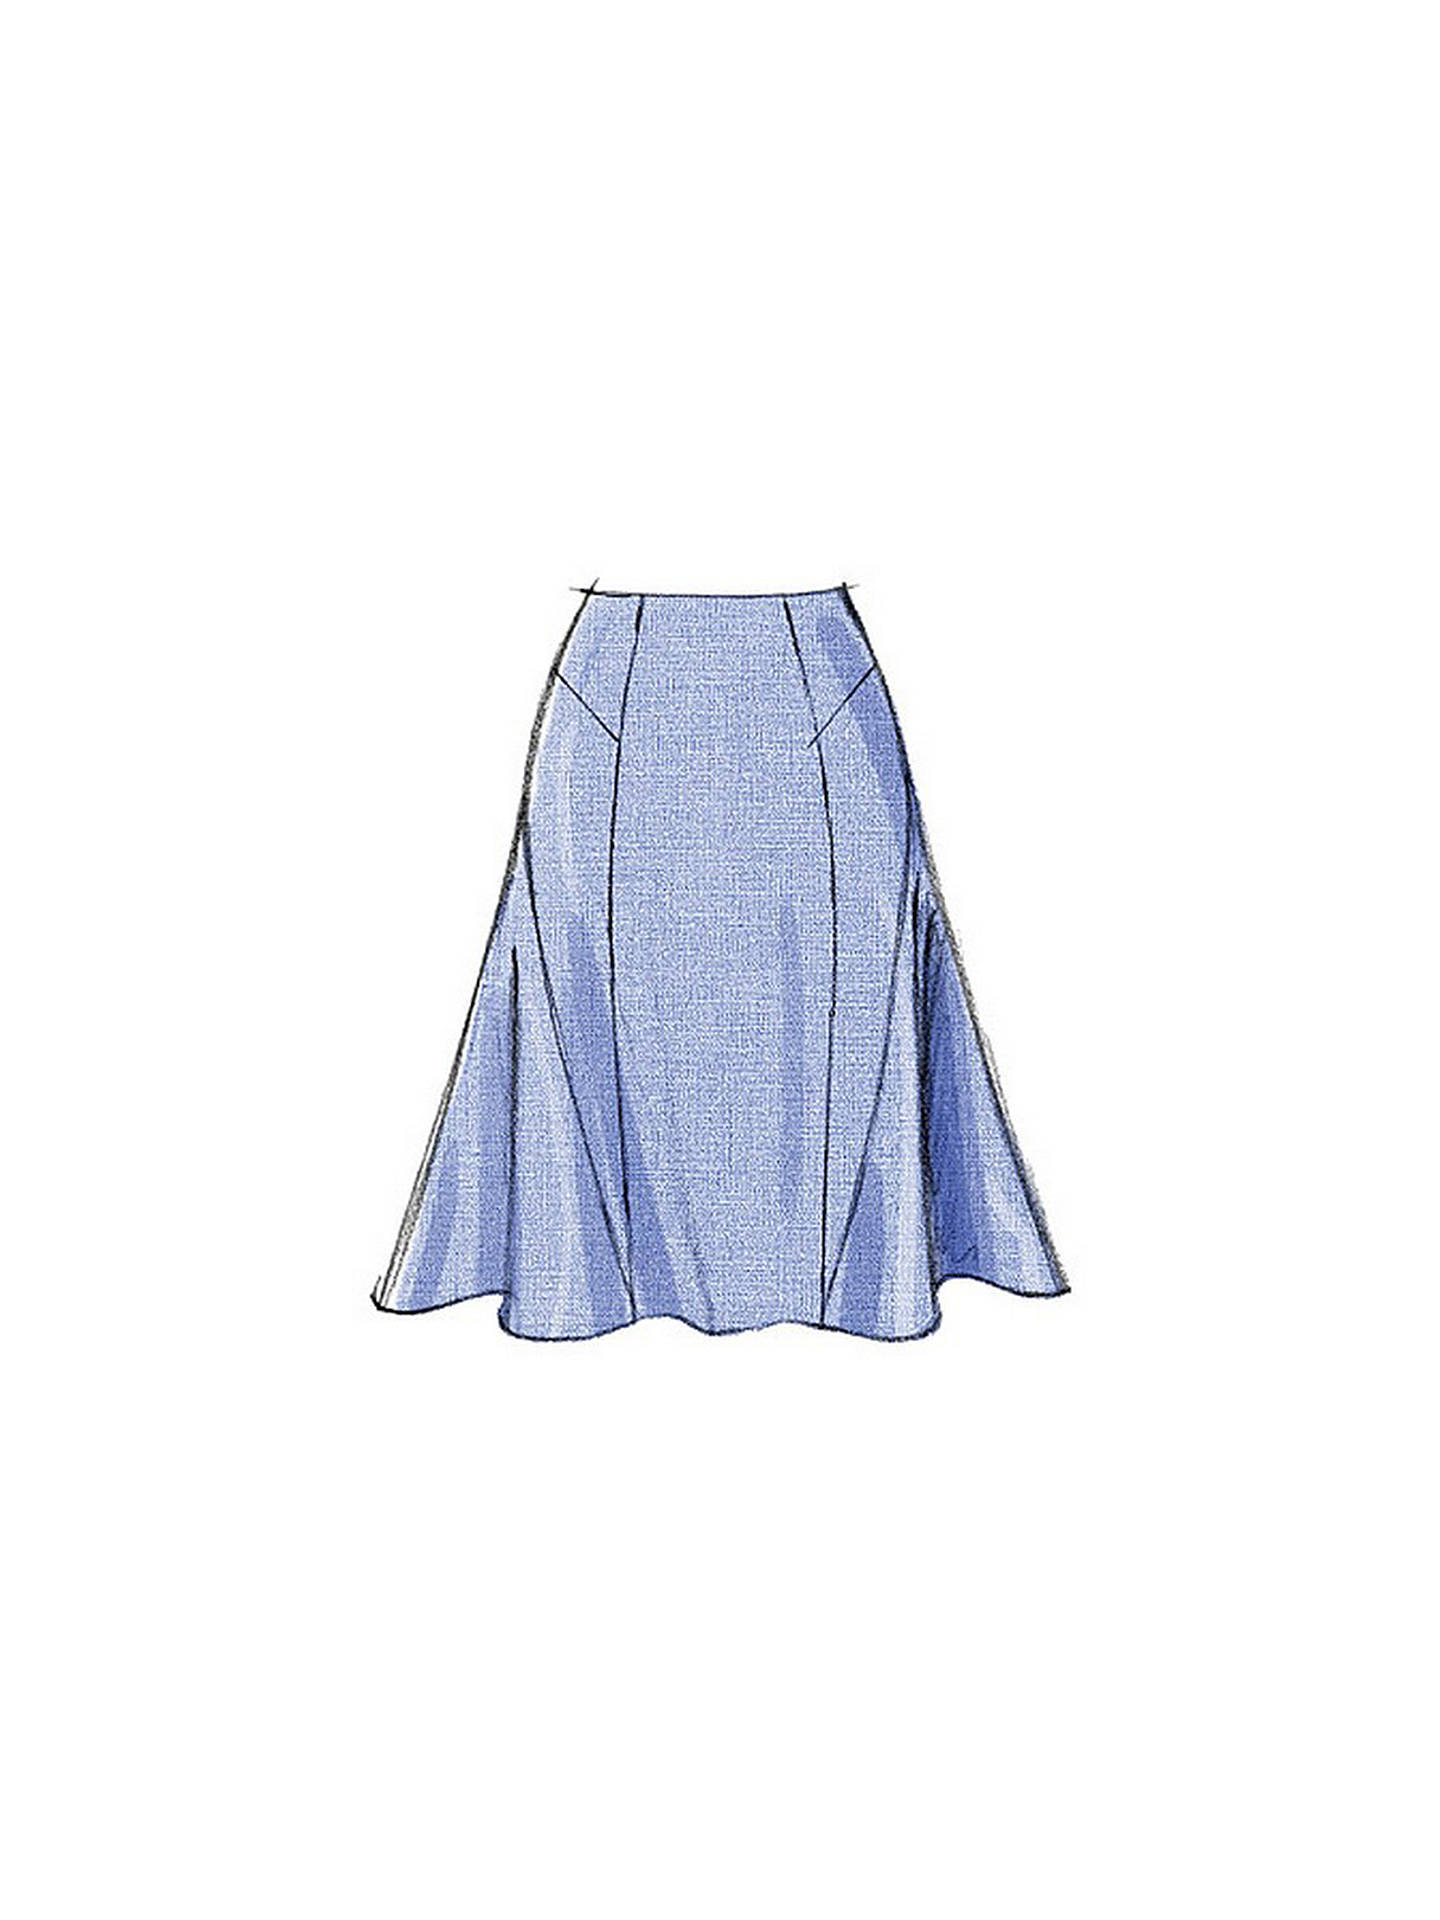 Vogue Women's Skirt Sewing Pattern, 8750 at John Lewis & Partners